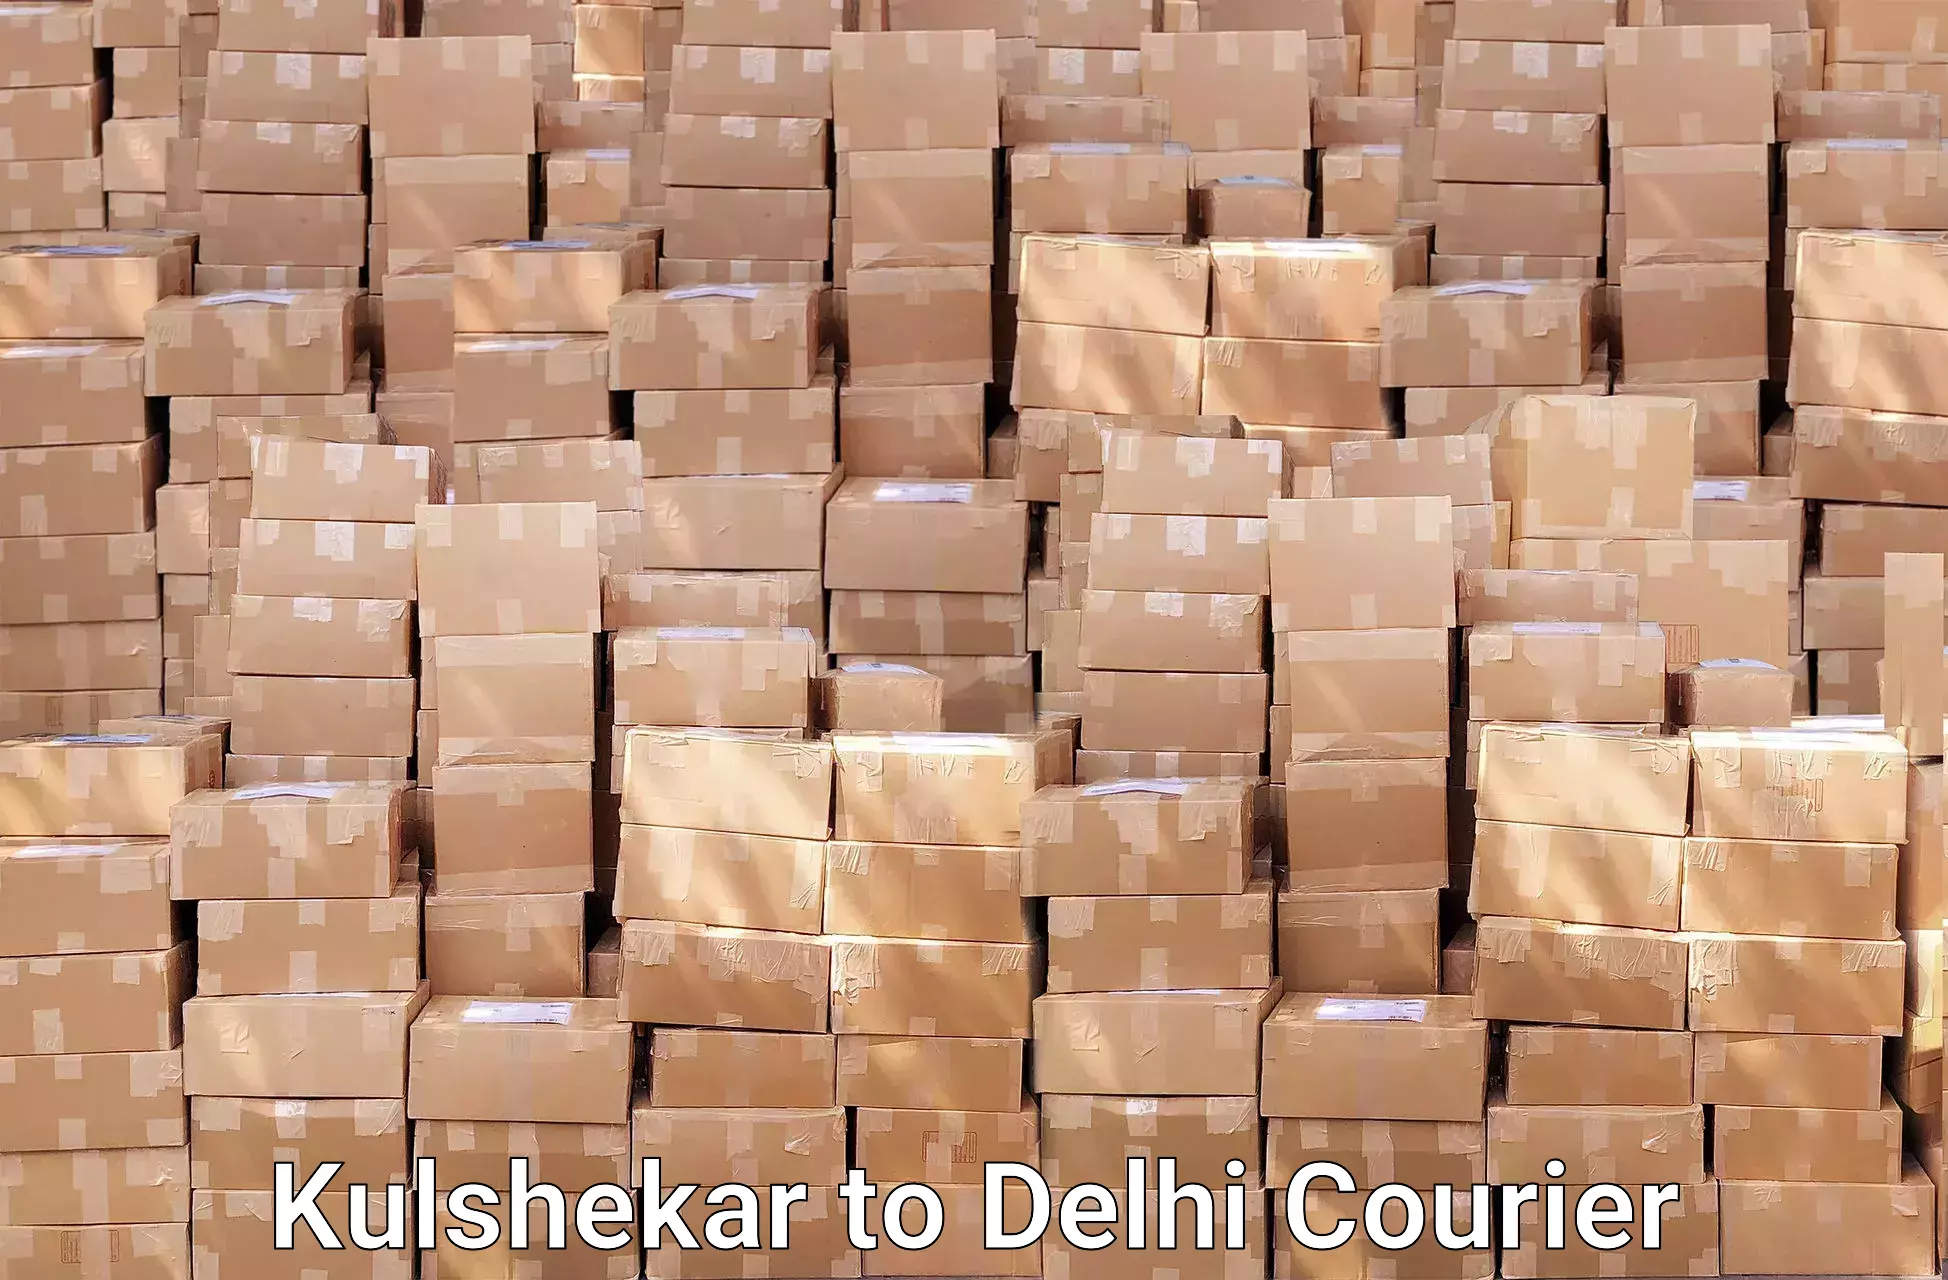 Professional furniture movers Kulshekar to Ashok Vihar